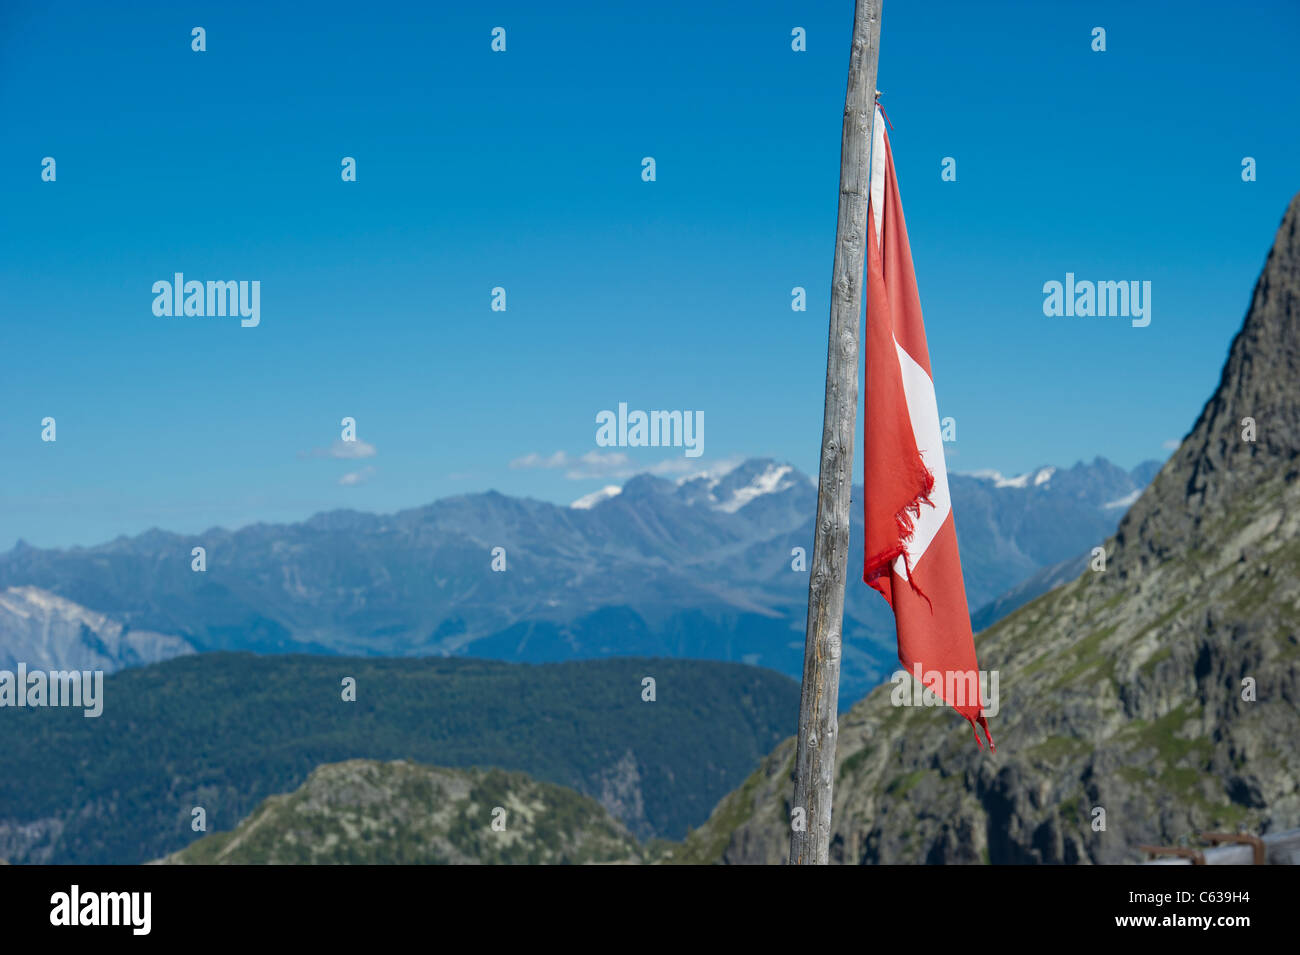 Un drapeau national suisse sur perche à un refuge de montagne au-dessus du barrage d'Emosson en Valais, Suisse. Banque D'Images